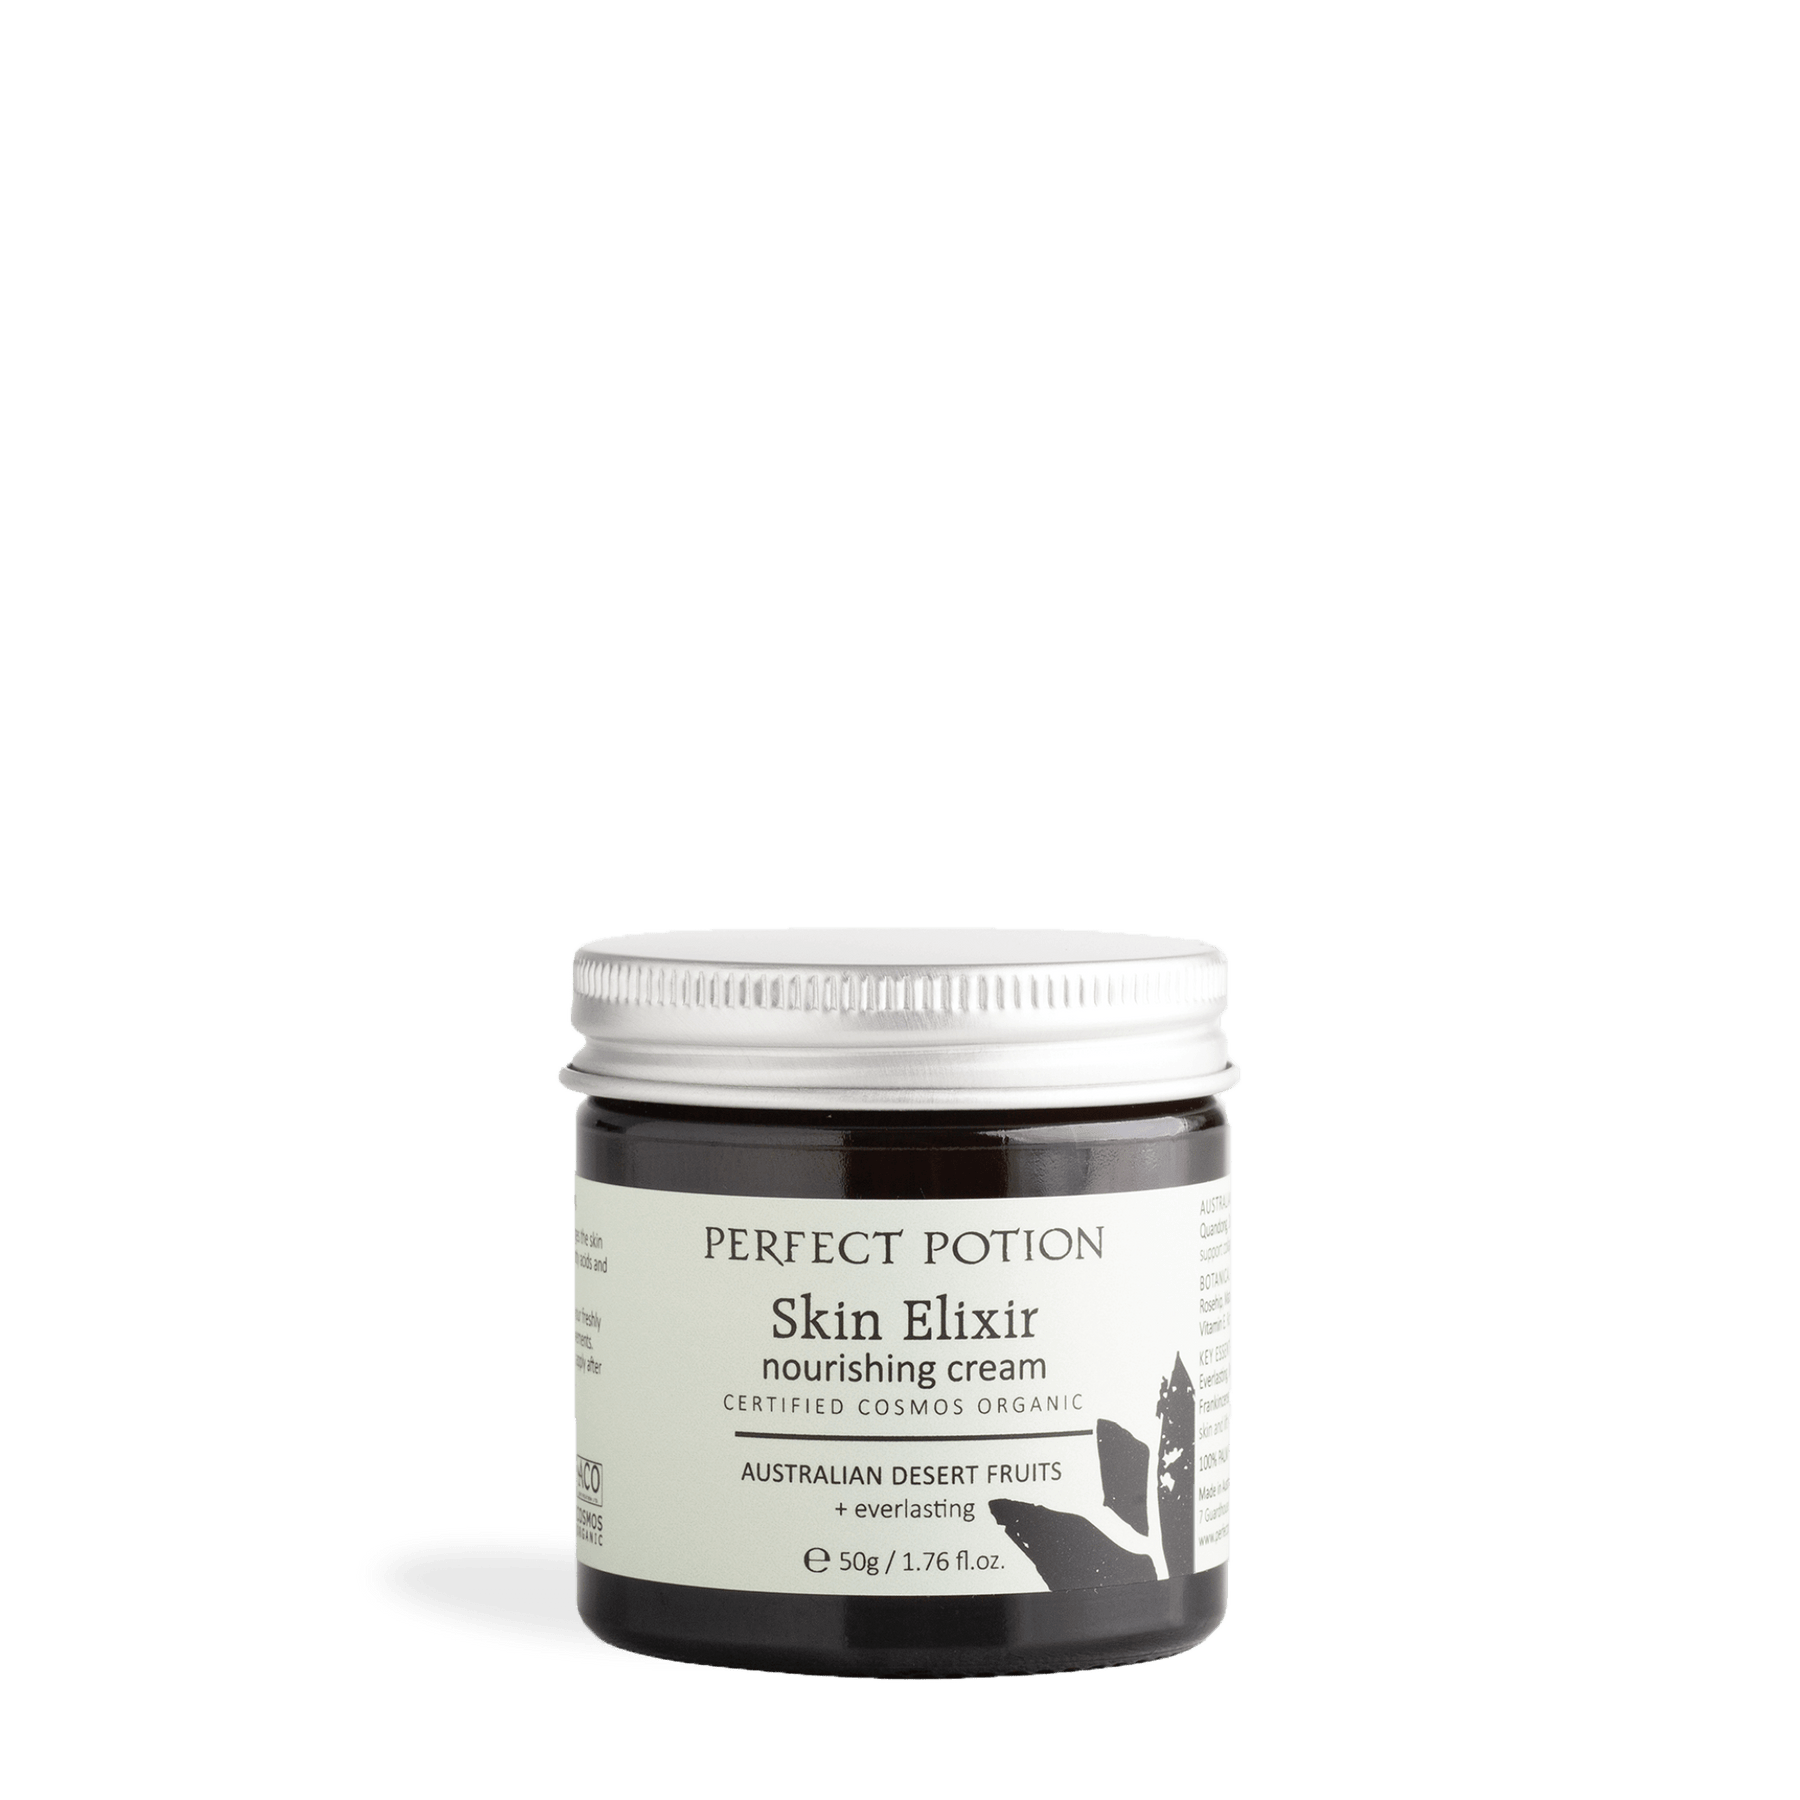 Organic Skin Elixir Nourishing Cream - Perfect Potion